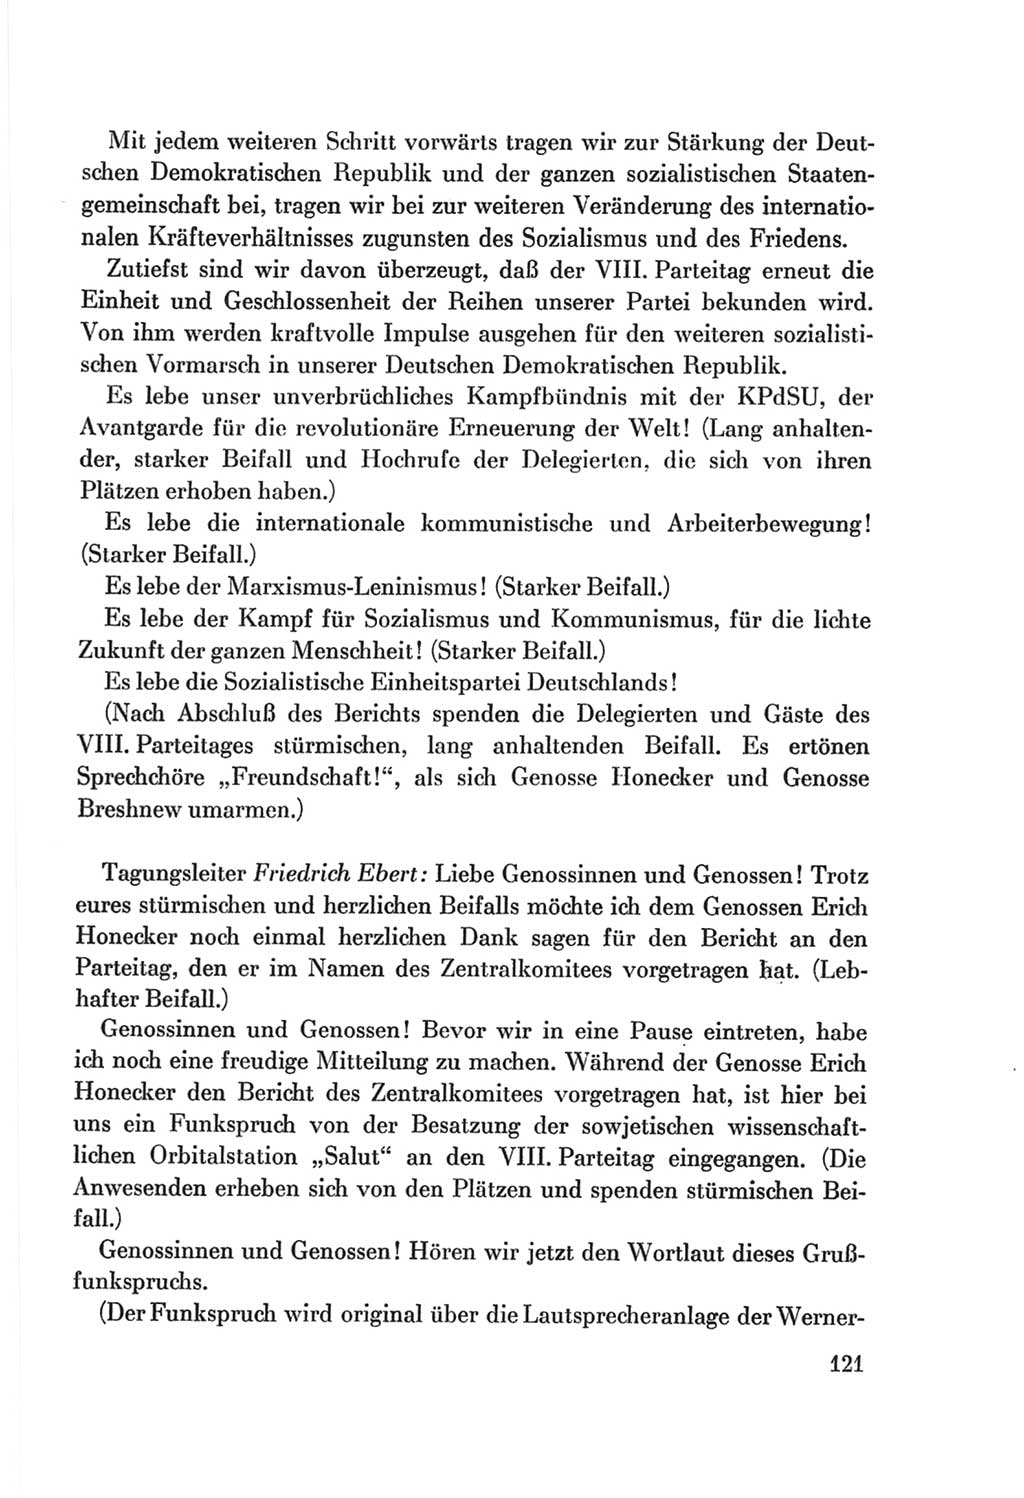 Protokoll der Verhandlungen des Ⅷ. Parteitages der Sozialistischen Einheitspartei Deutschlands (SED) [Deutsche Demokratische Republik (DDR)] 1971, Band 1, Seite 121 (Prot. Verh. Ⅷ. PT SED DDR 1971, Bd. 1, S. 121)